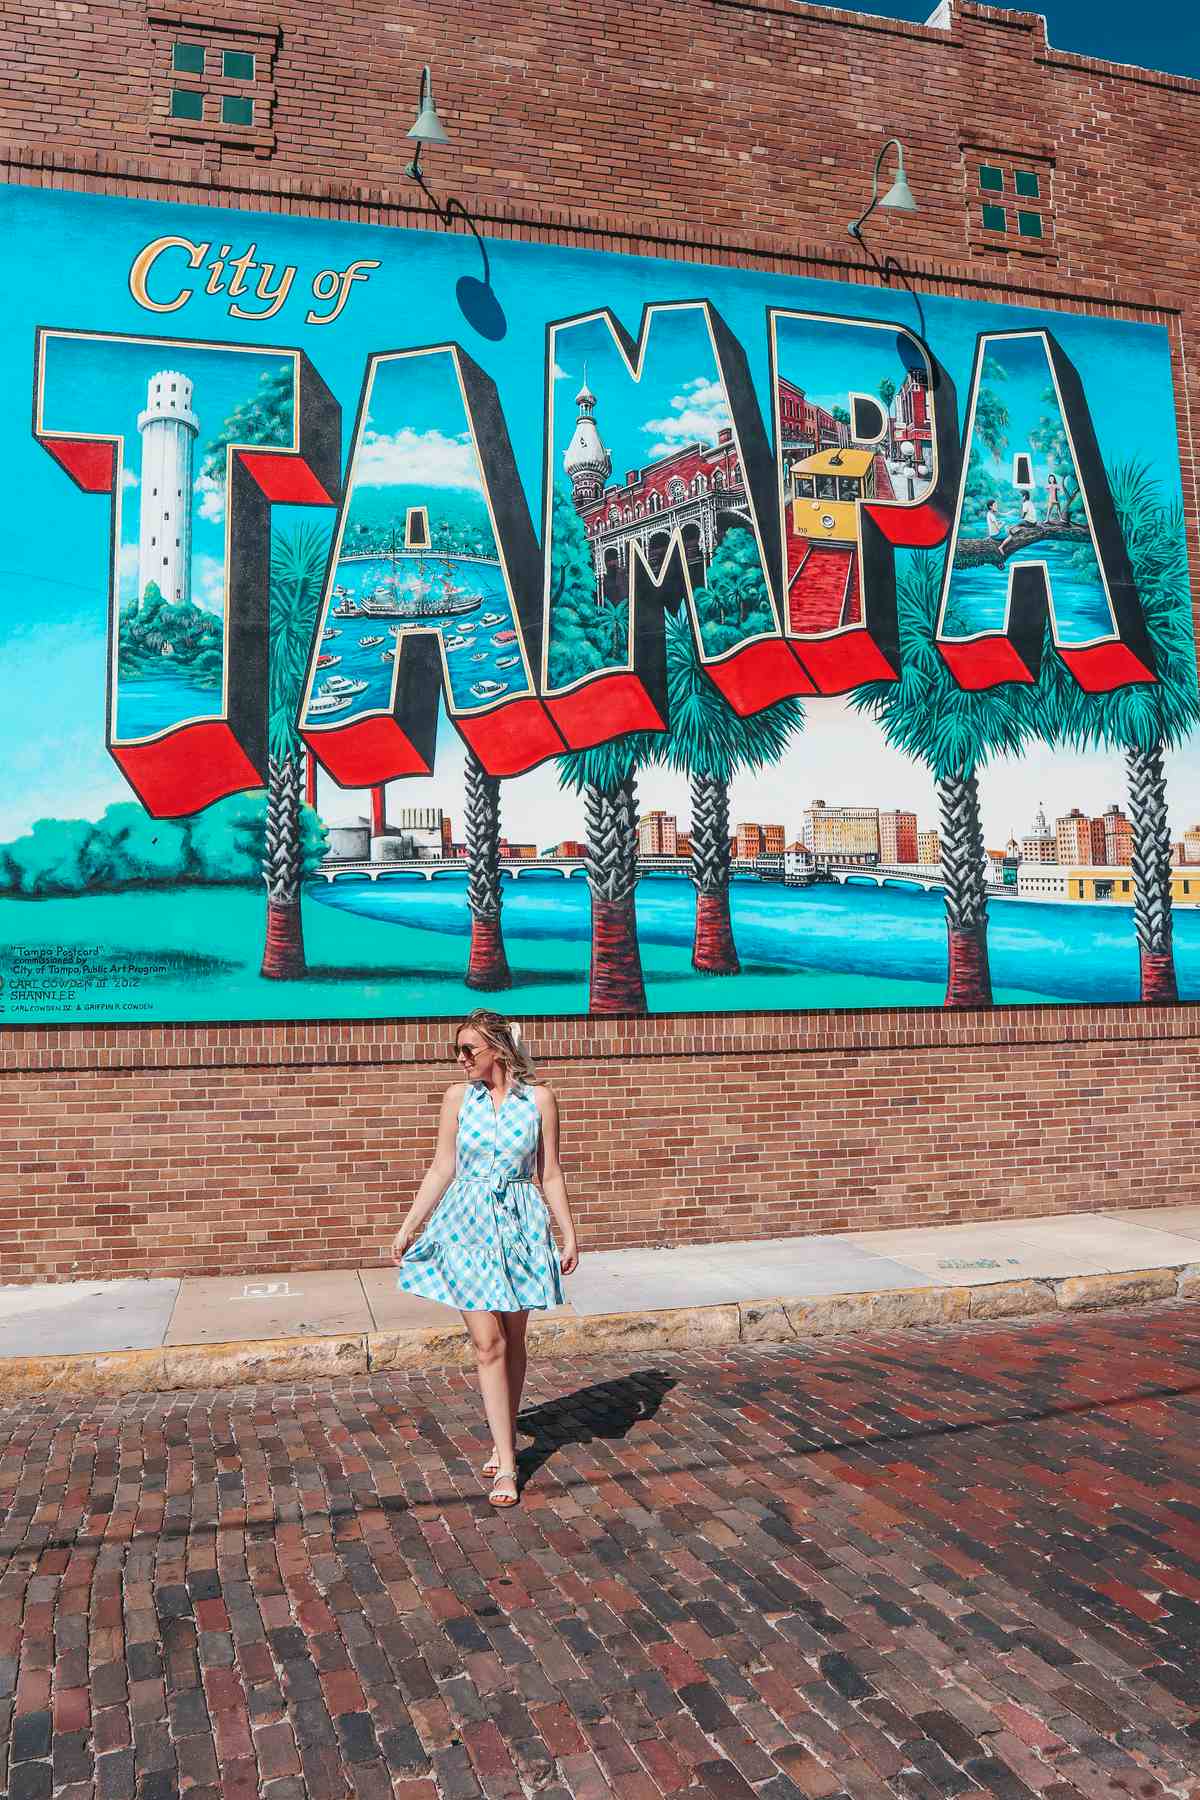 City of Tampa mural